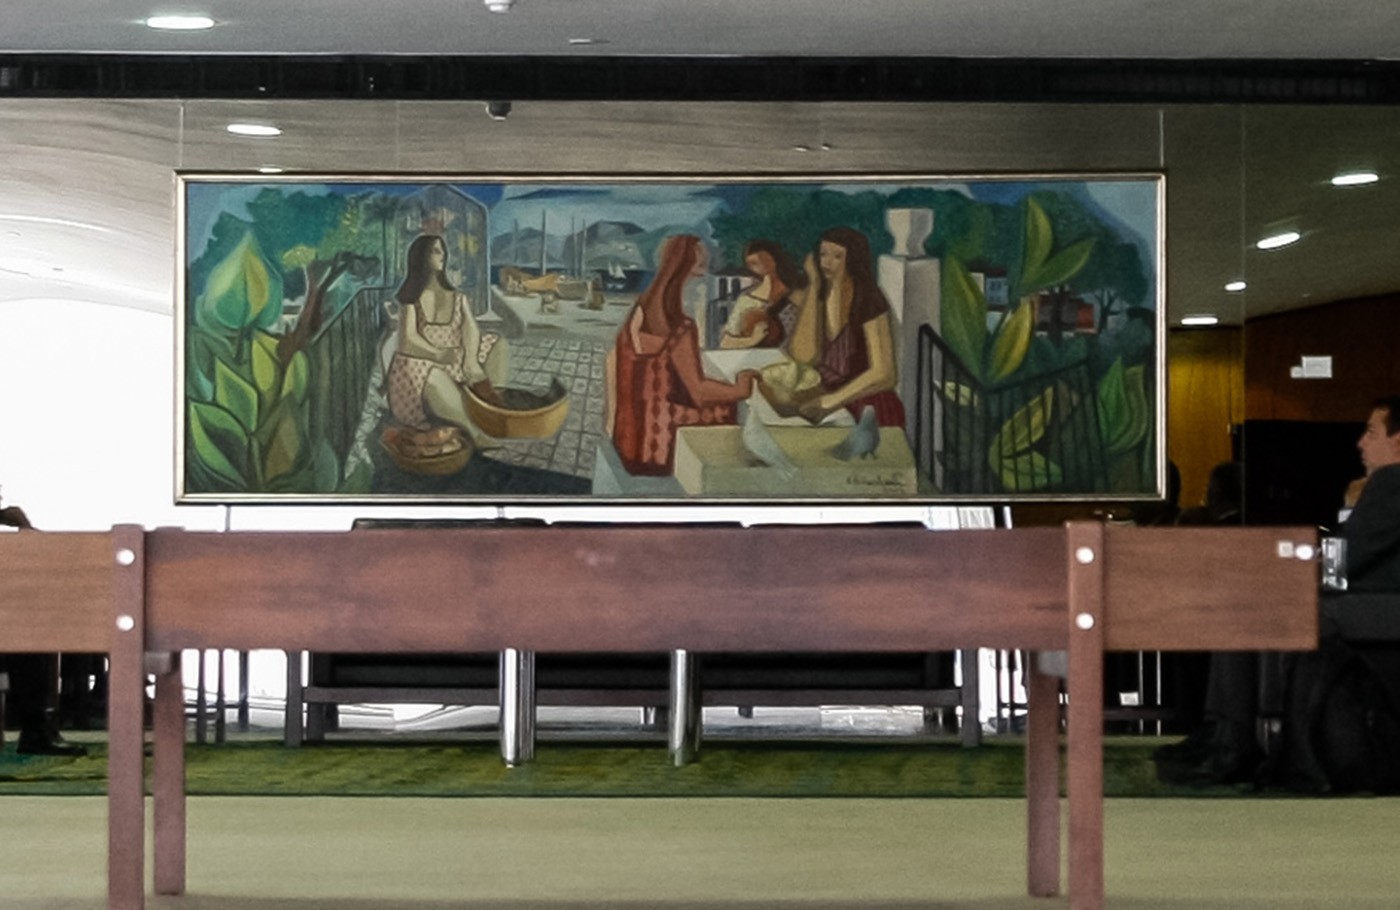 As obras de arte vandalizadas nas invasões em Brasília